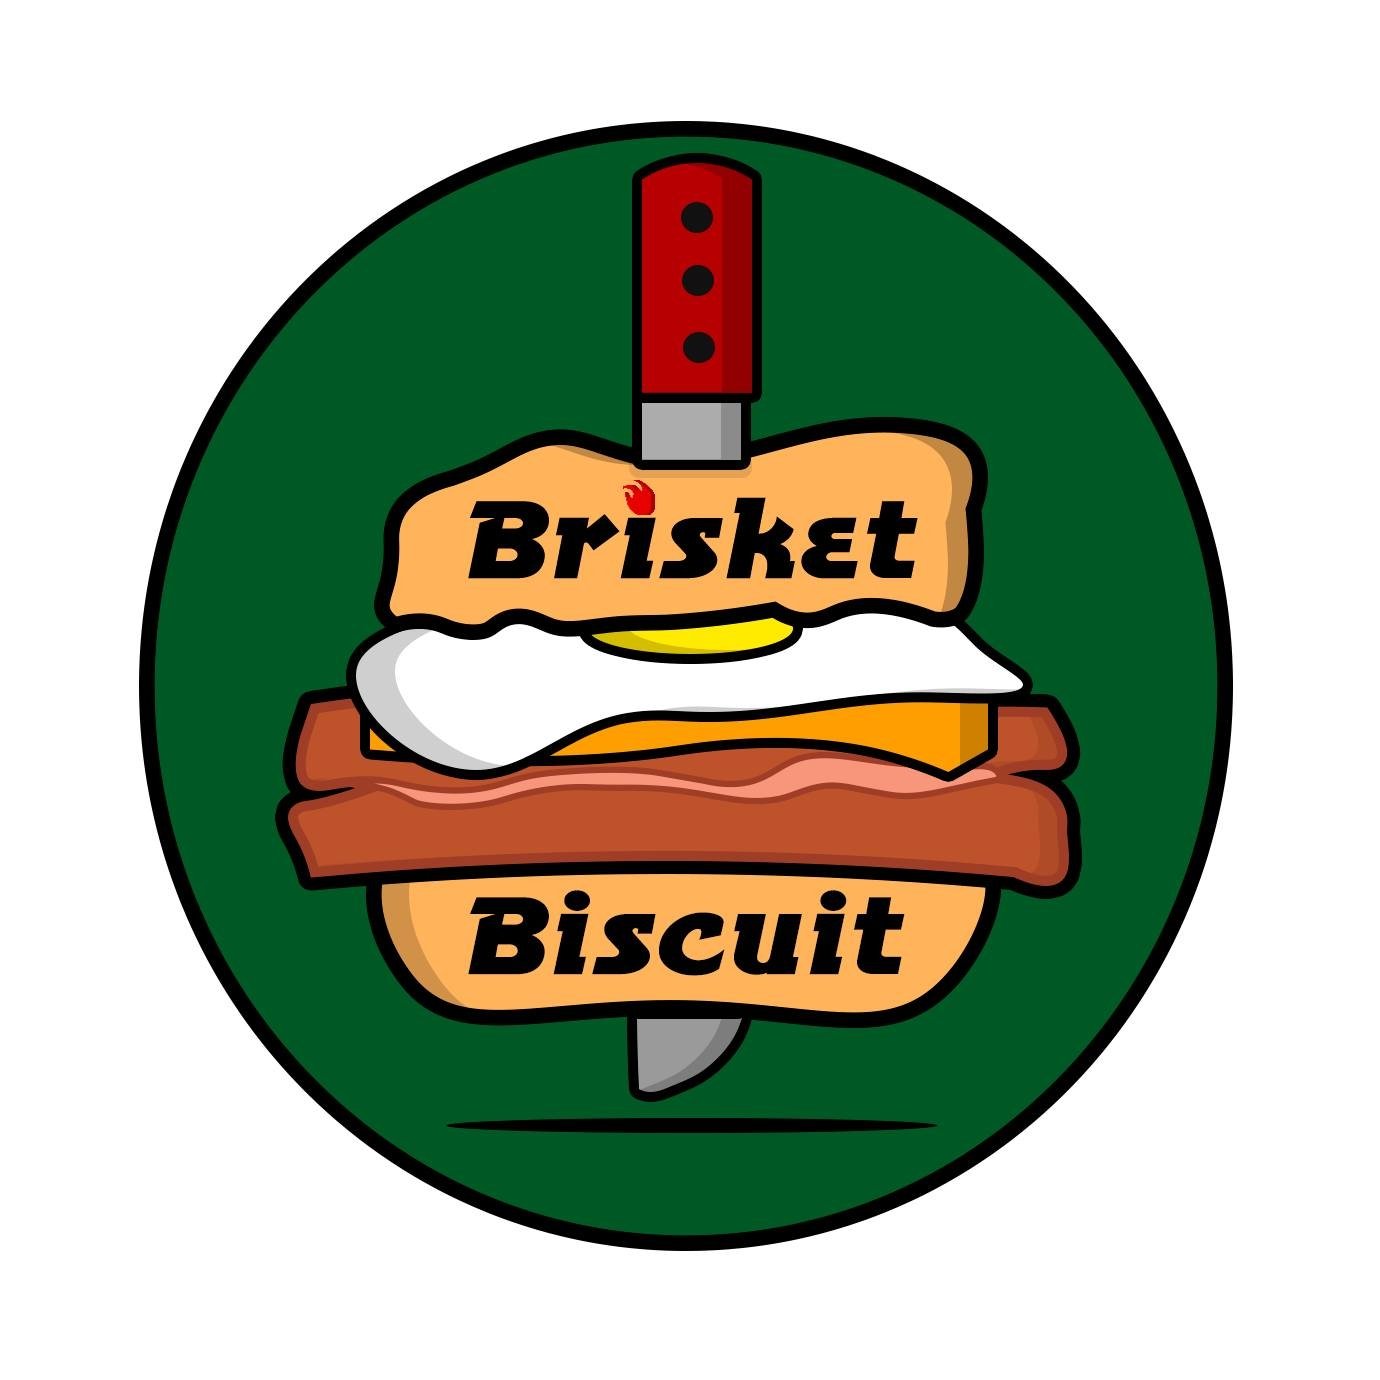 Brisket Biscuit